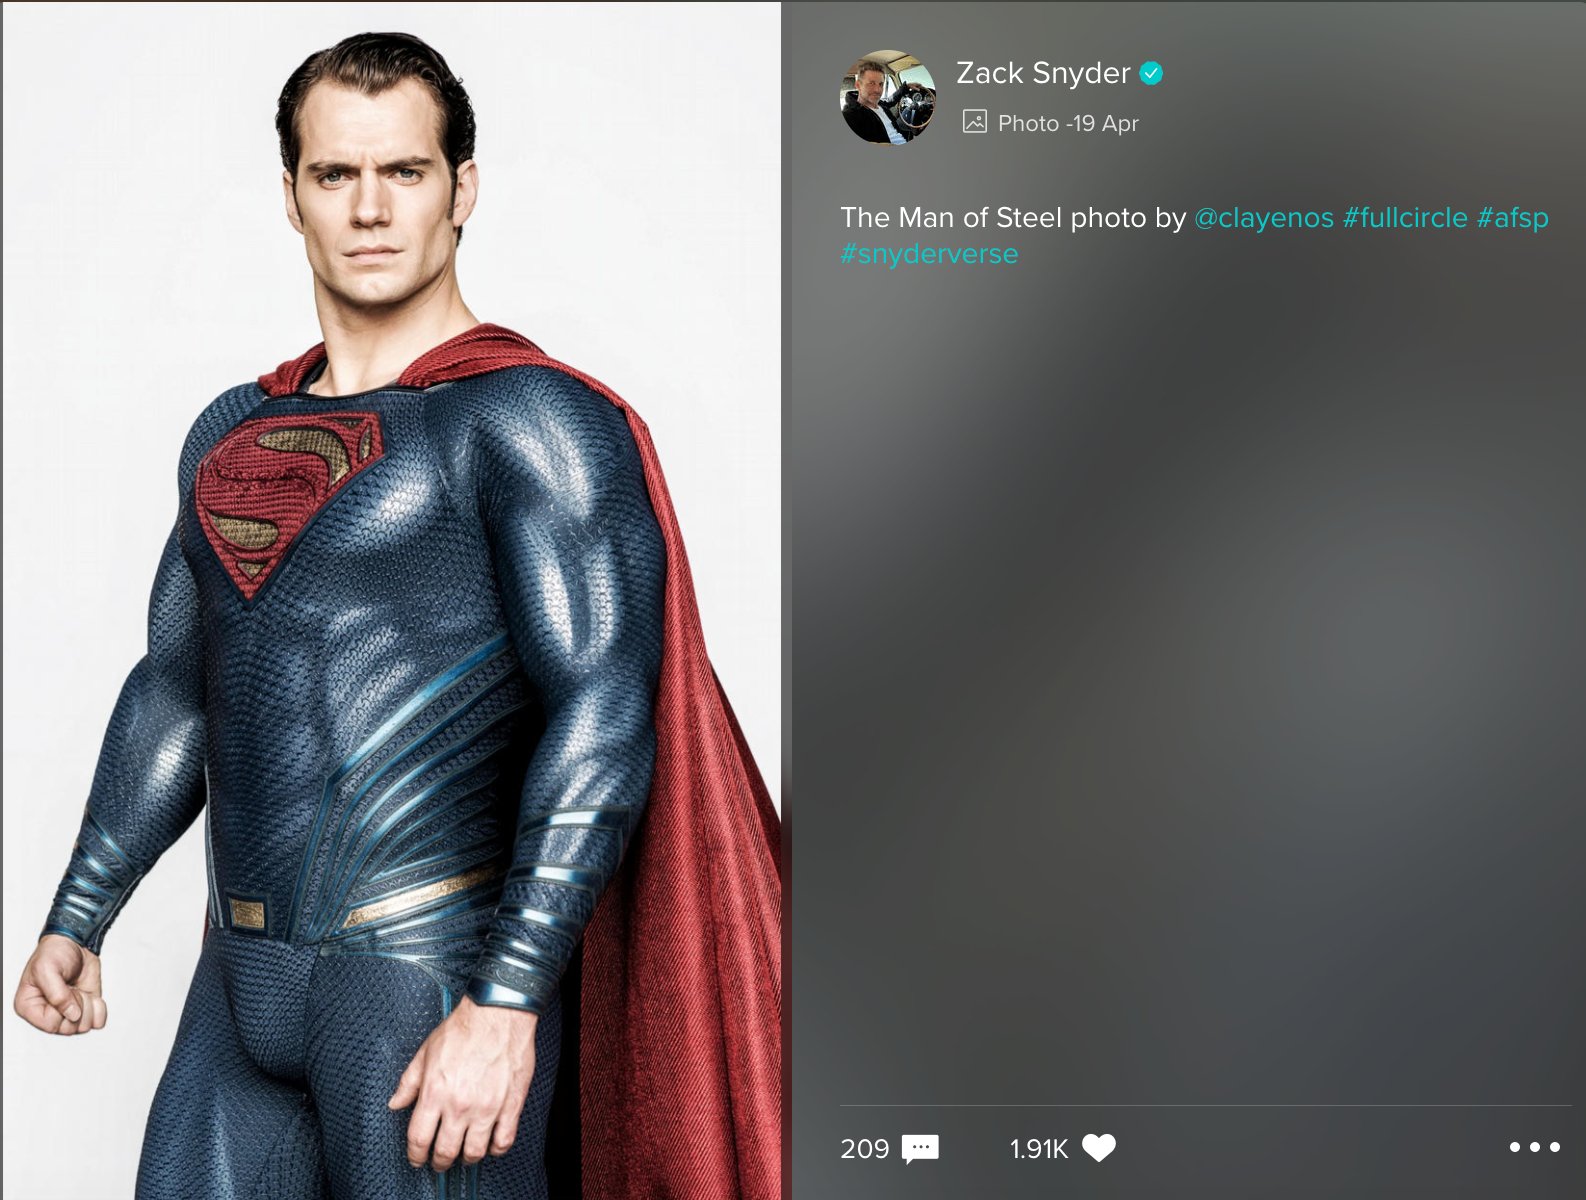 Zack Snyder post of Henry Cavill's Superman